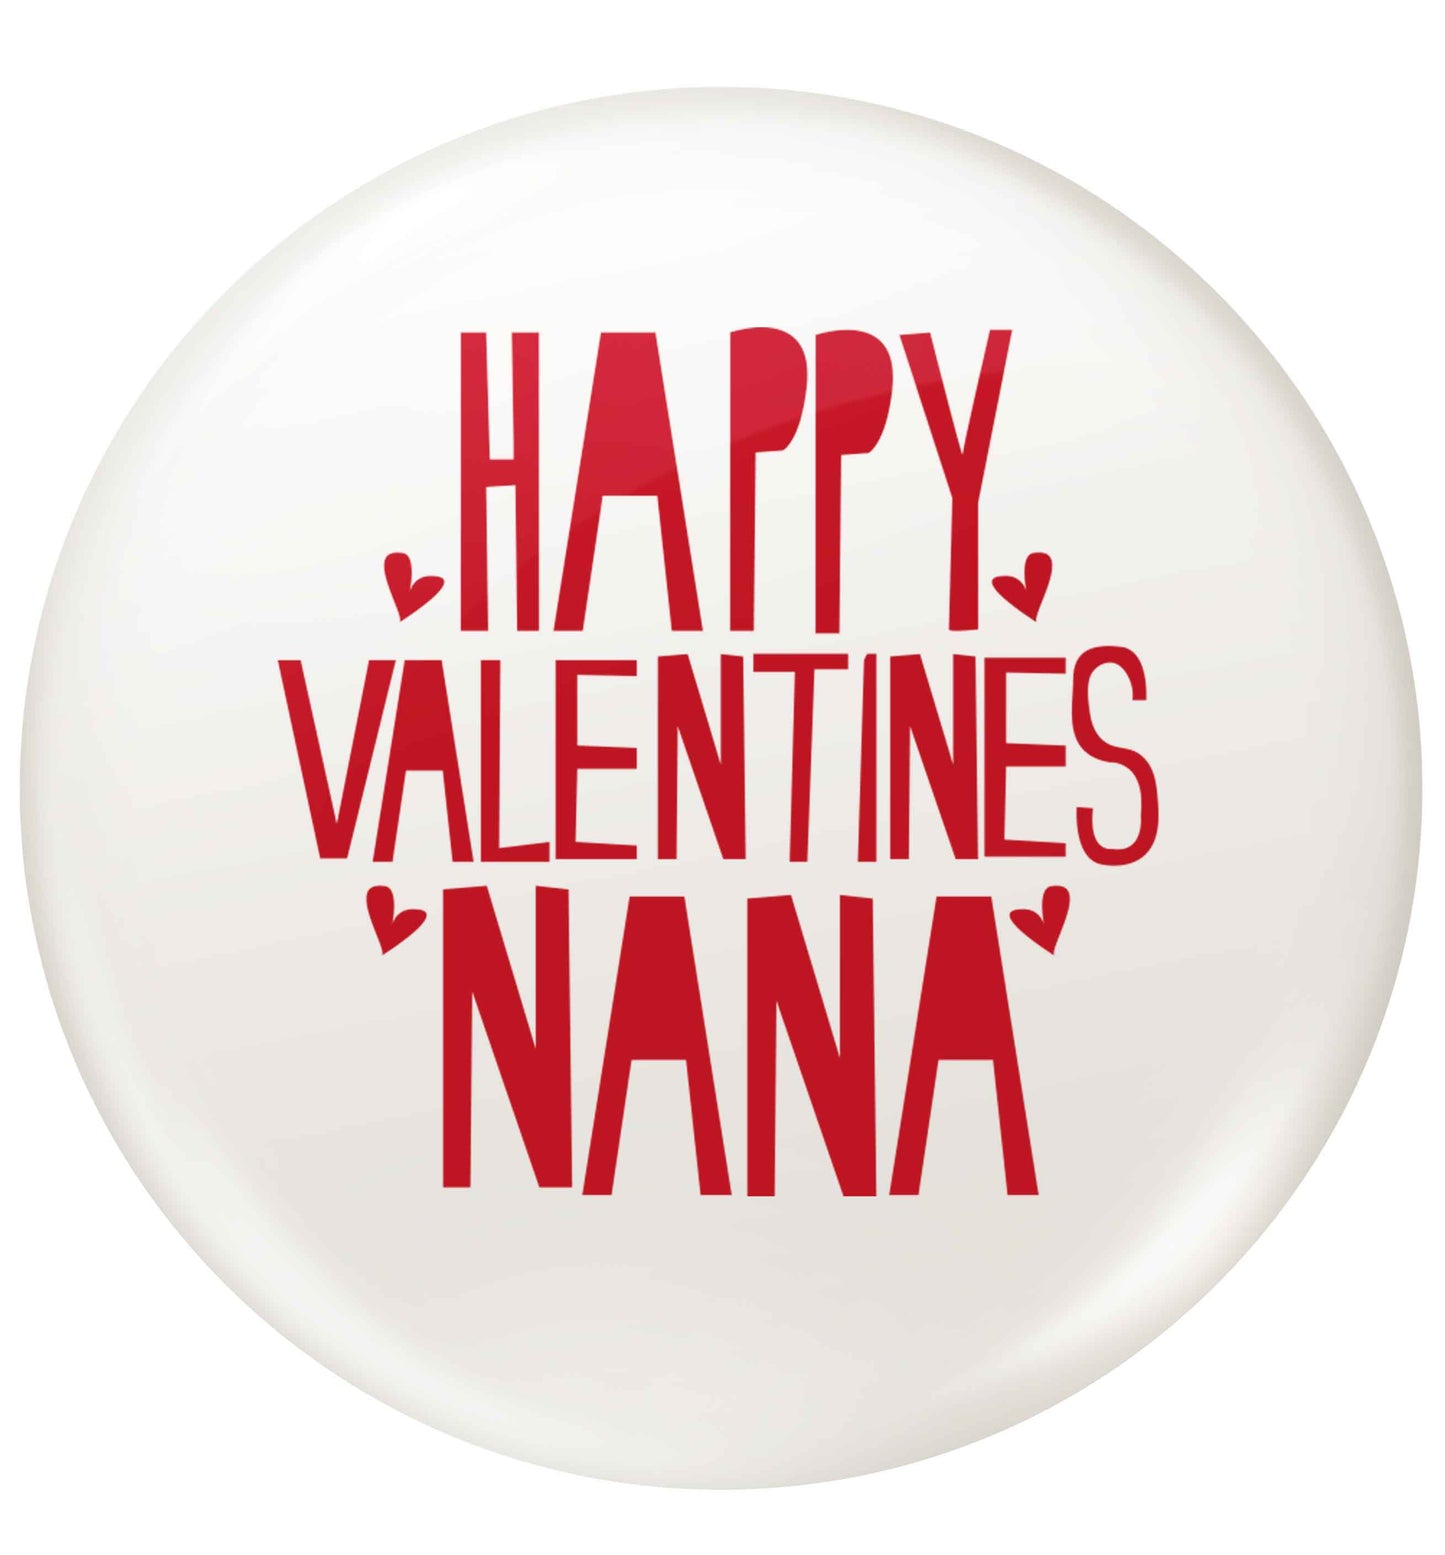 Happy valentines nana small 25mm Pin badge